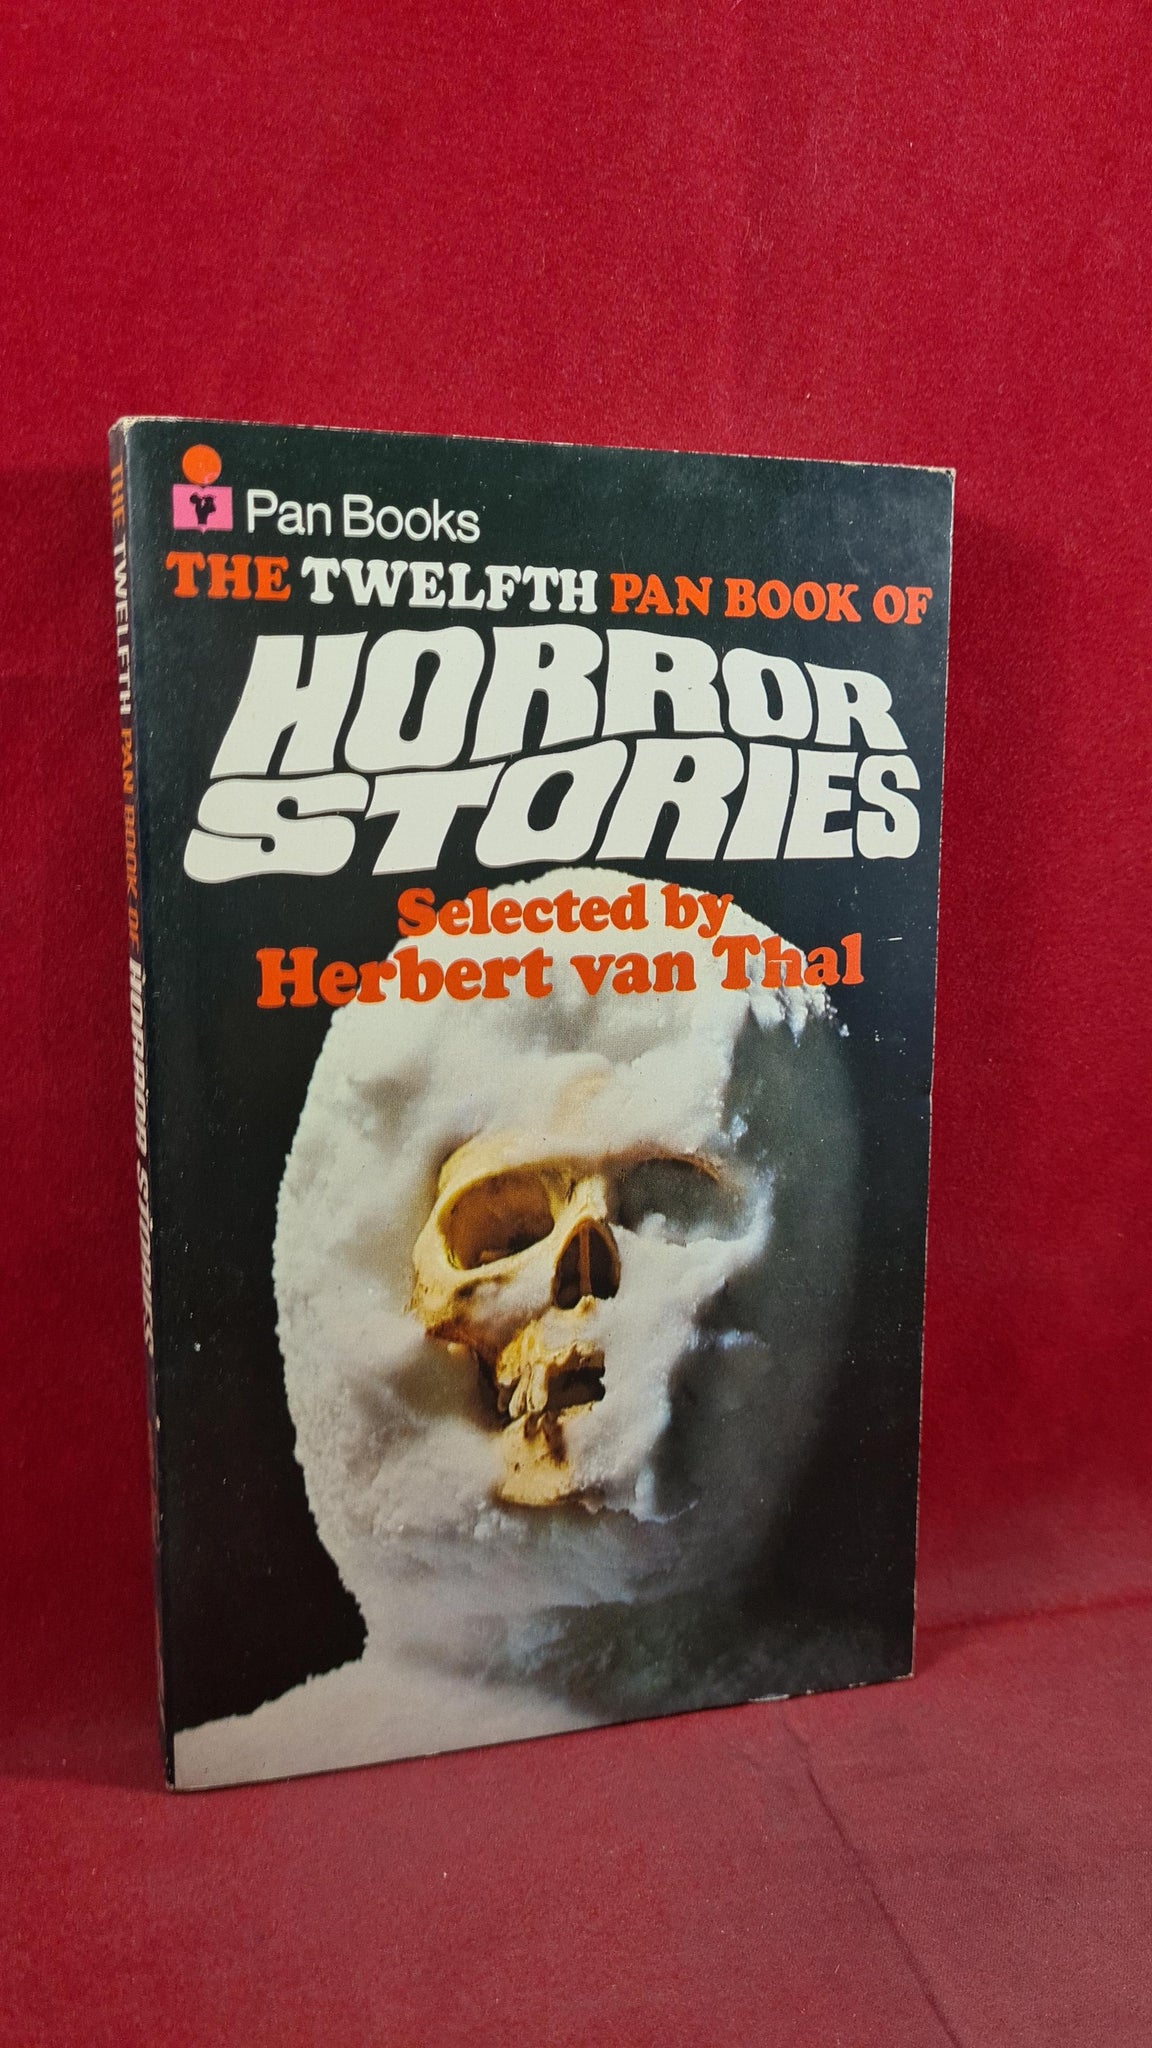 The Pan Book of Horror Stories by Herbert van Thal